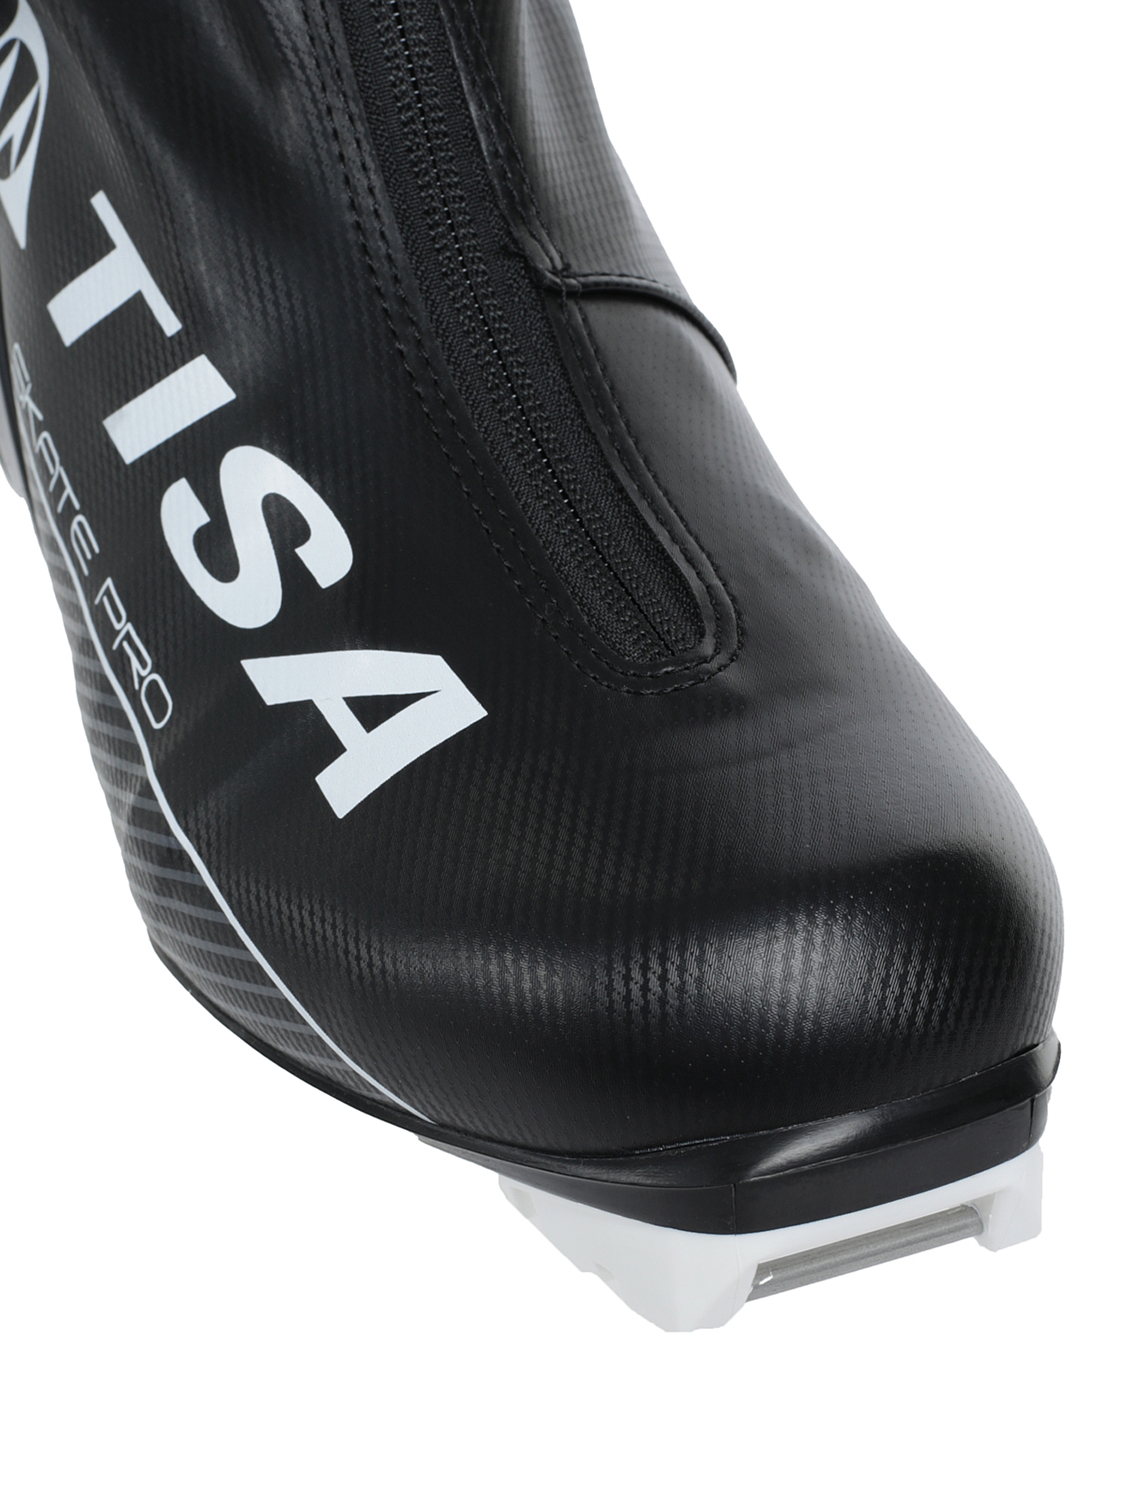 Лыжные ботинки TISA Pro Skate Nnn